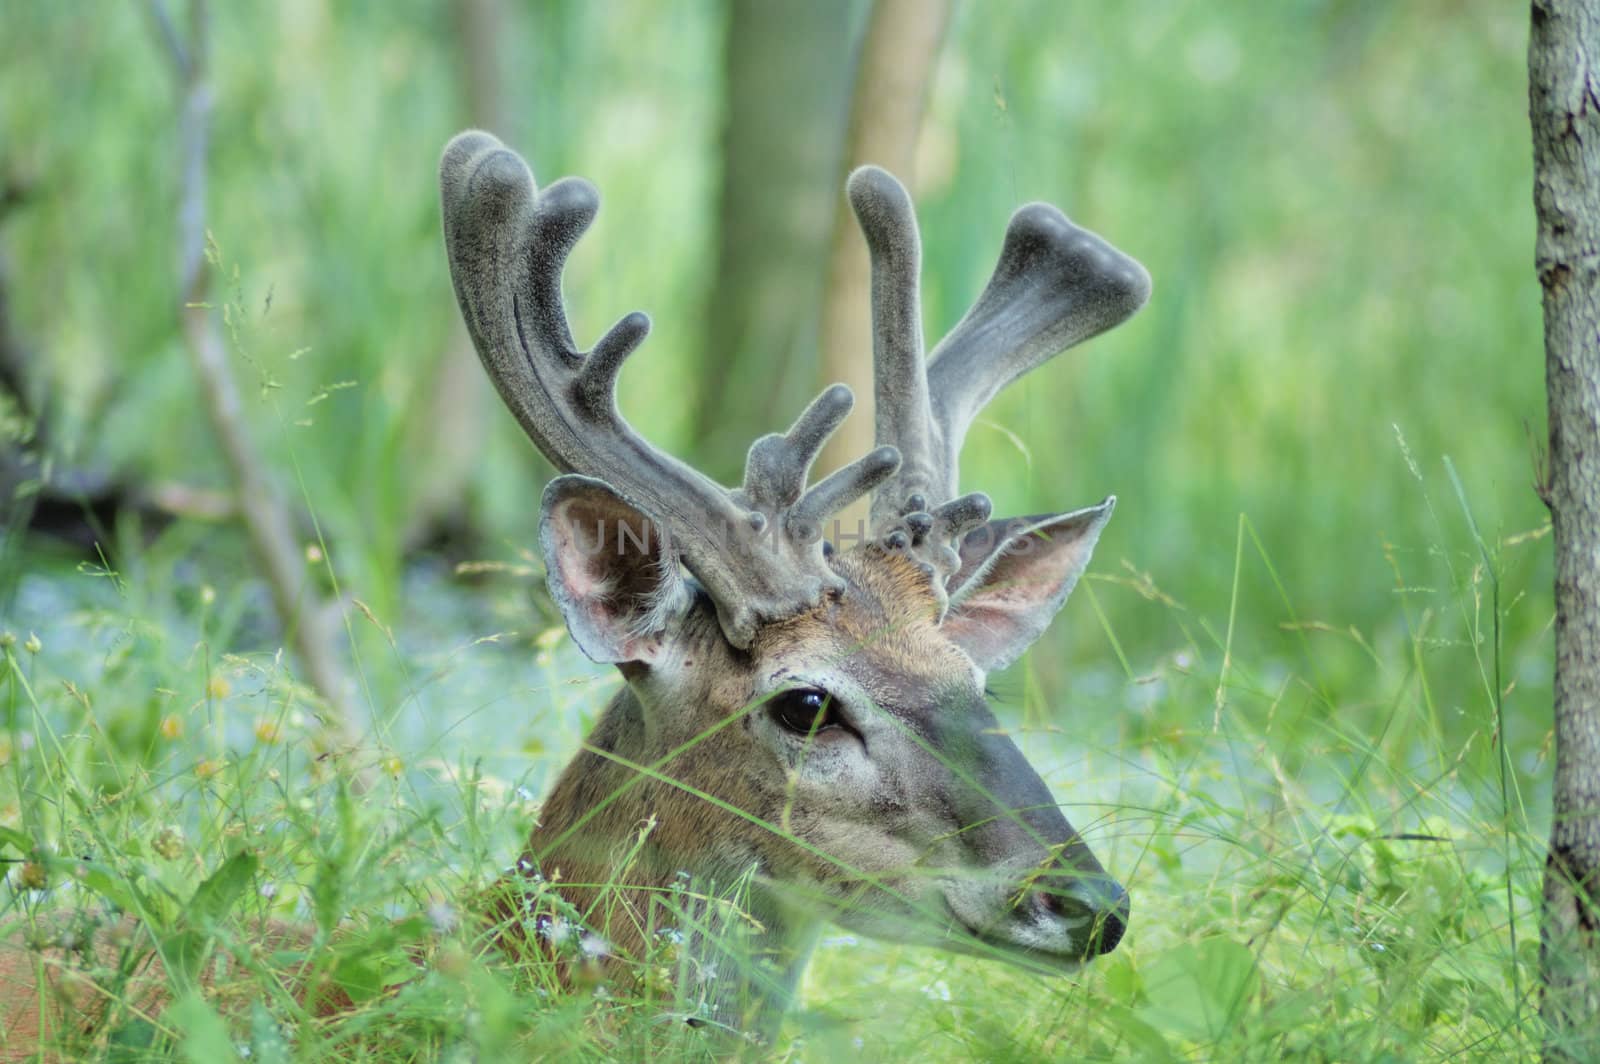 A whitetail deer buck in summer velvet close up head shot.